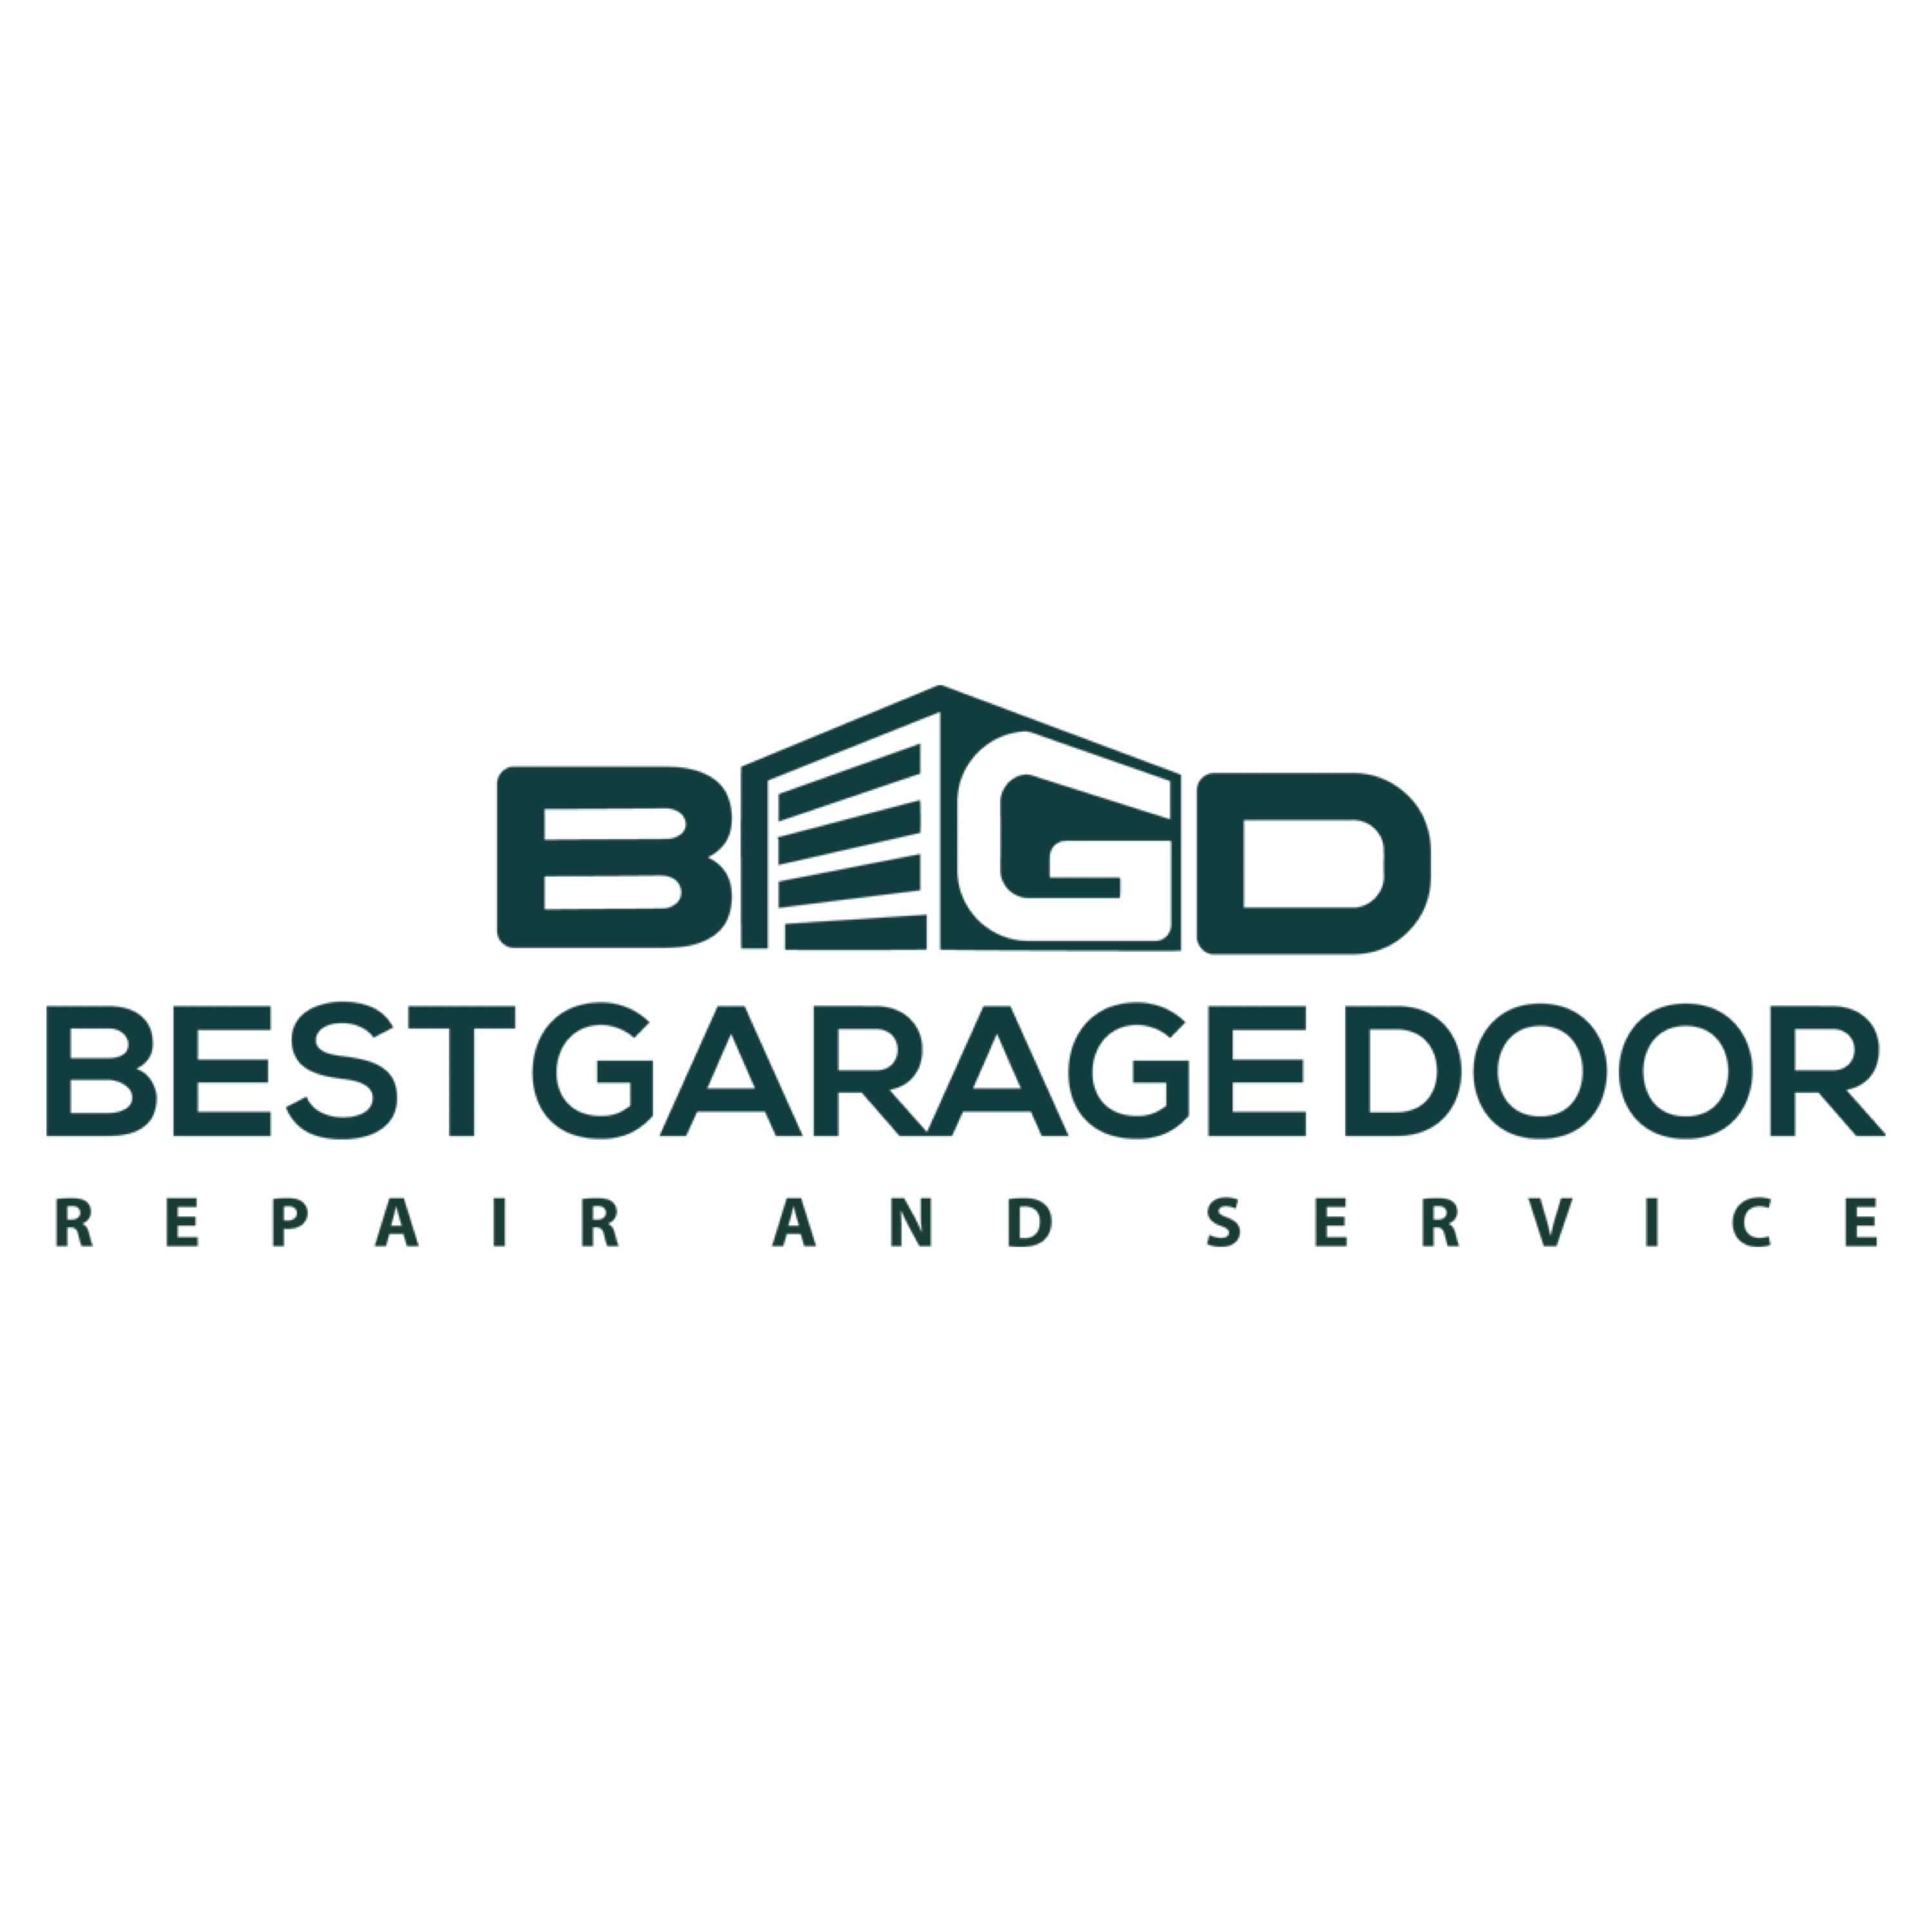 Best Garage Door Repair and Service LLC Logo